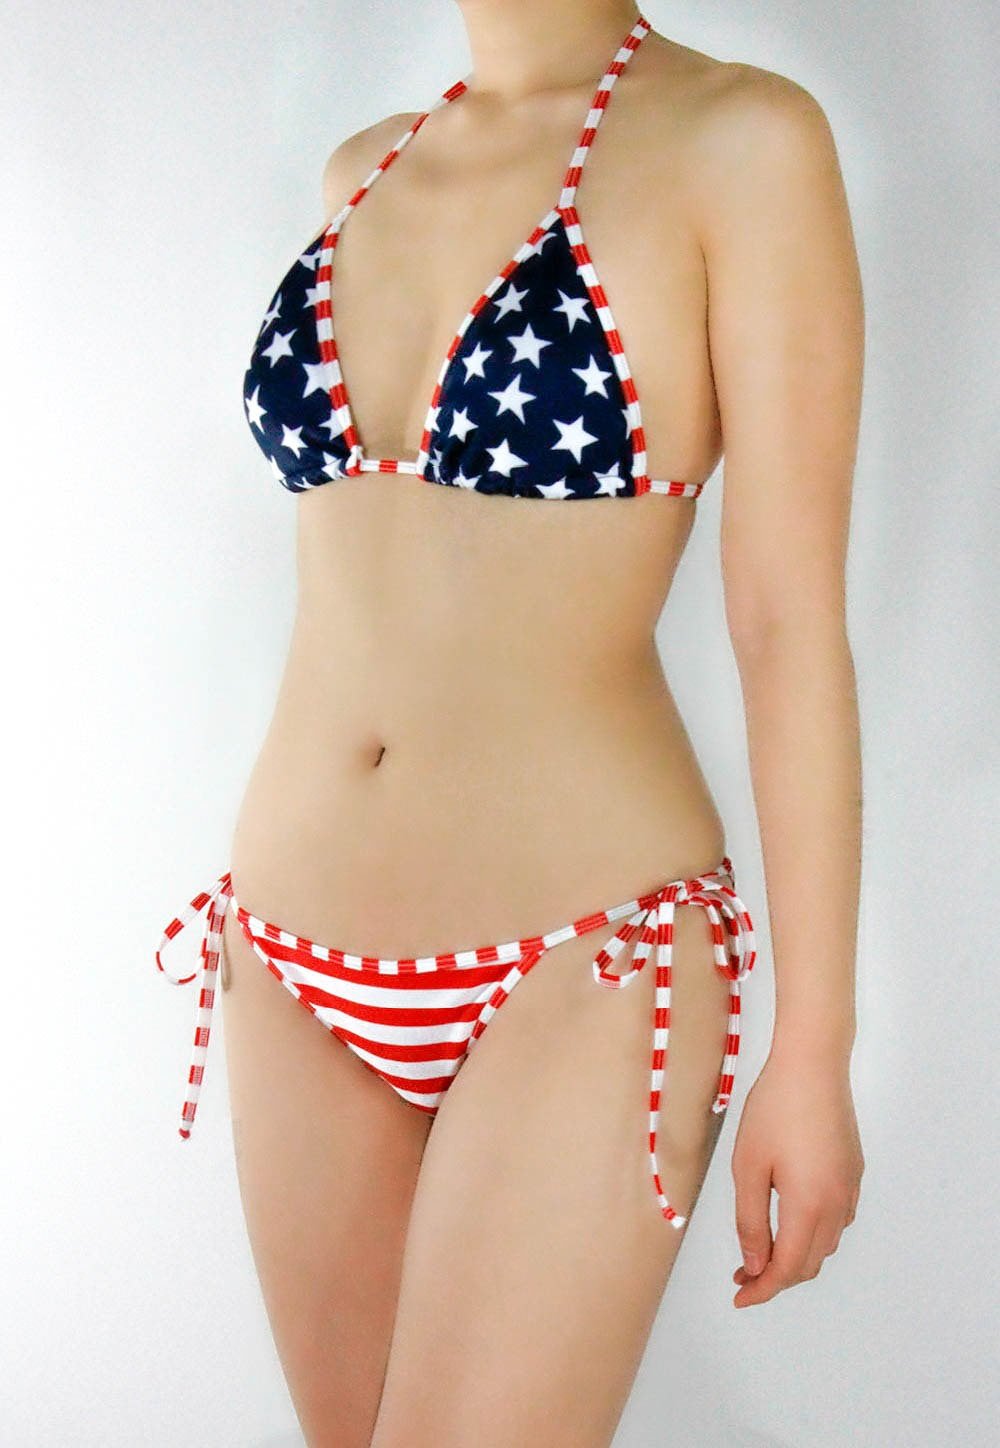 American Flag Bikini - Stars and Stripes - Made in America - Army Girl - Fahrenheit Swimwear